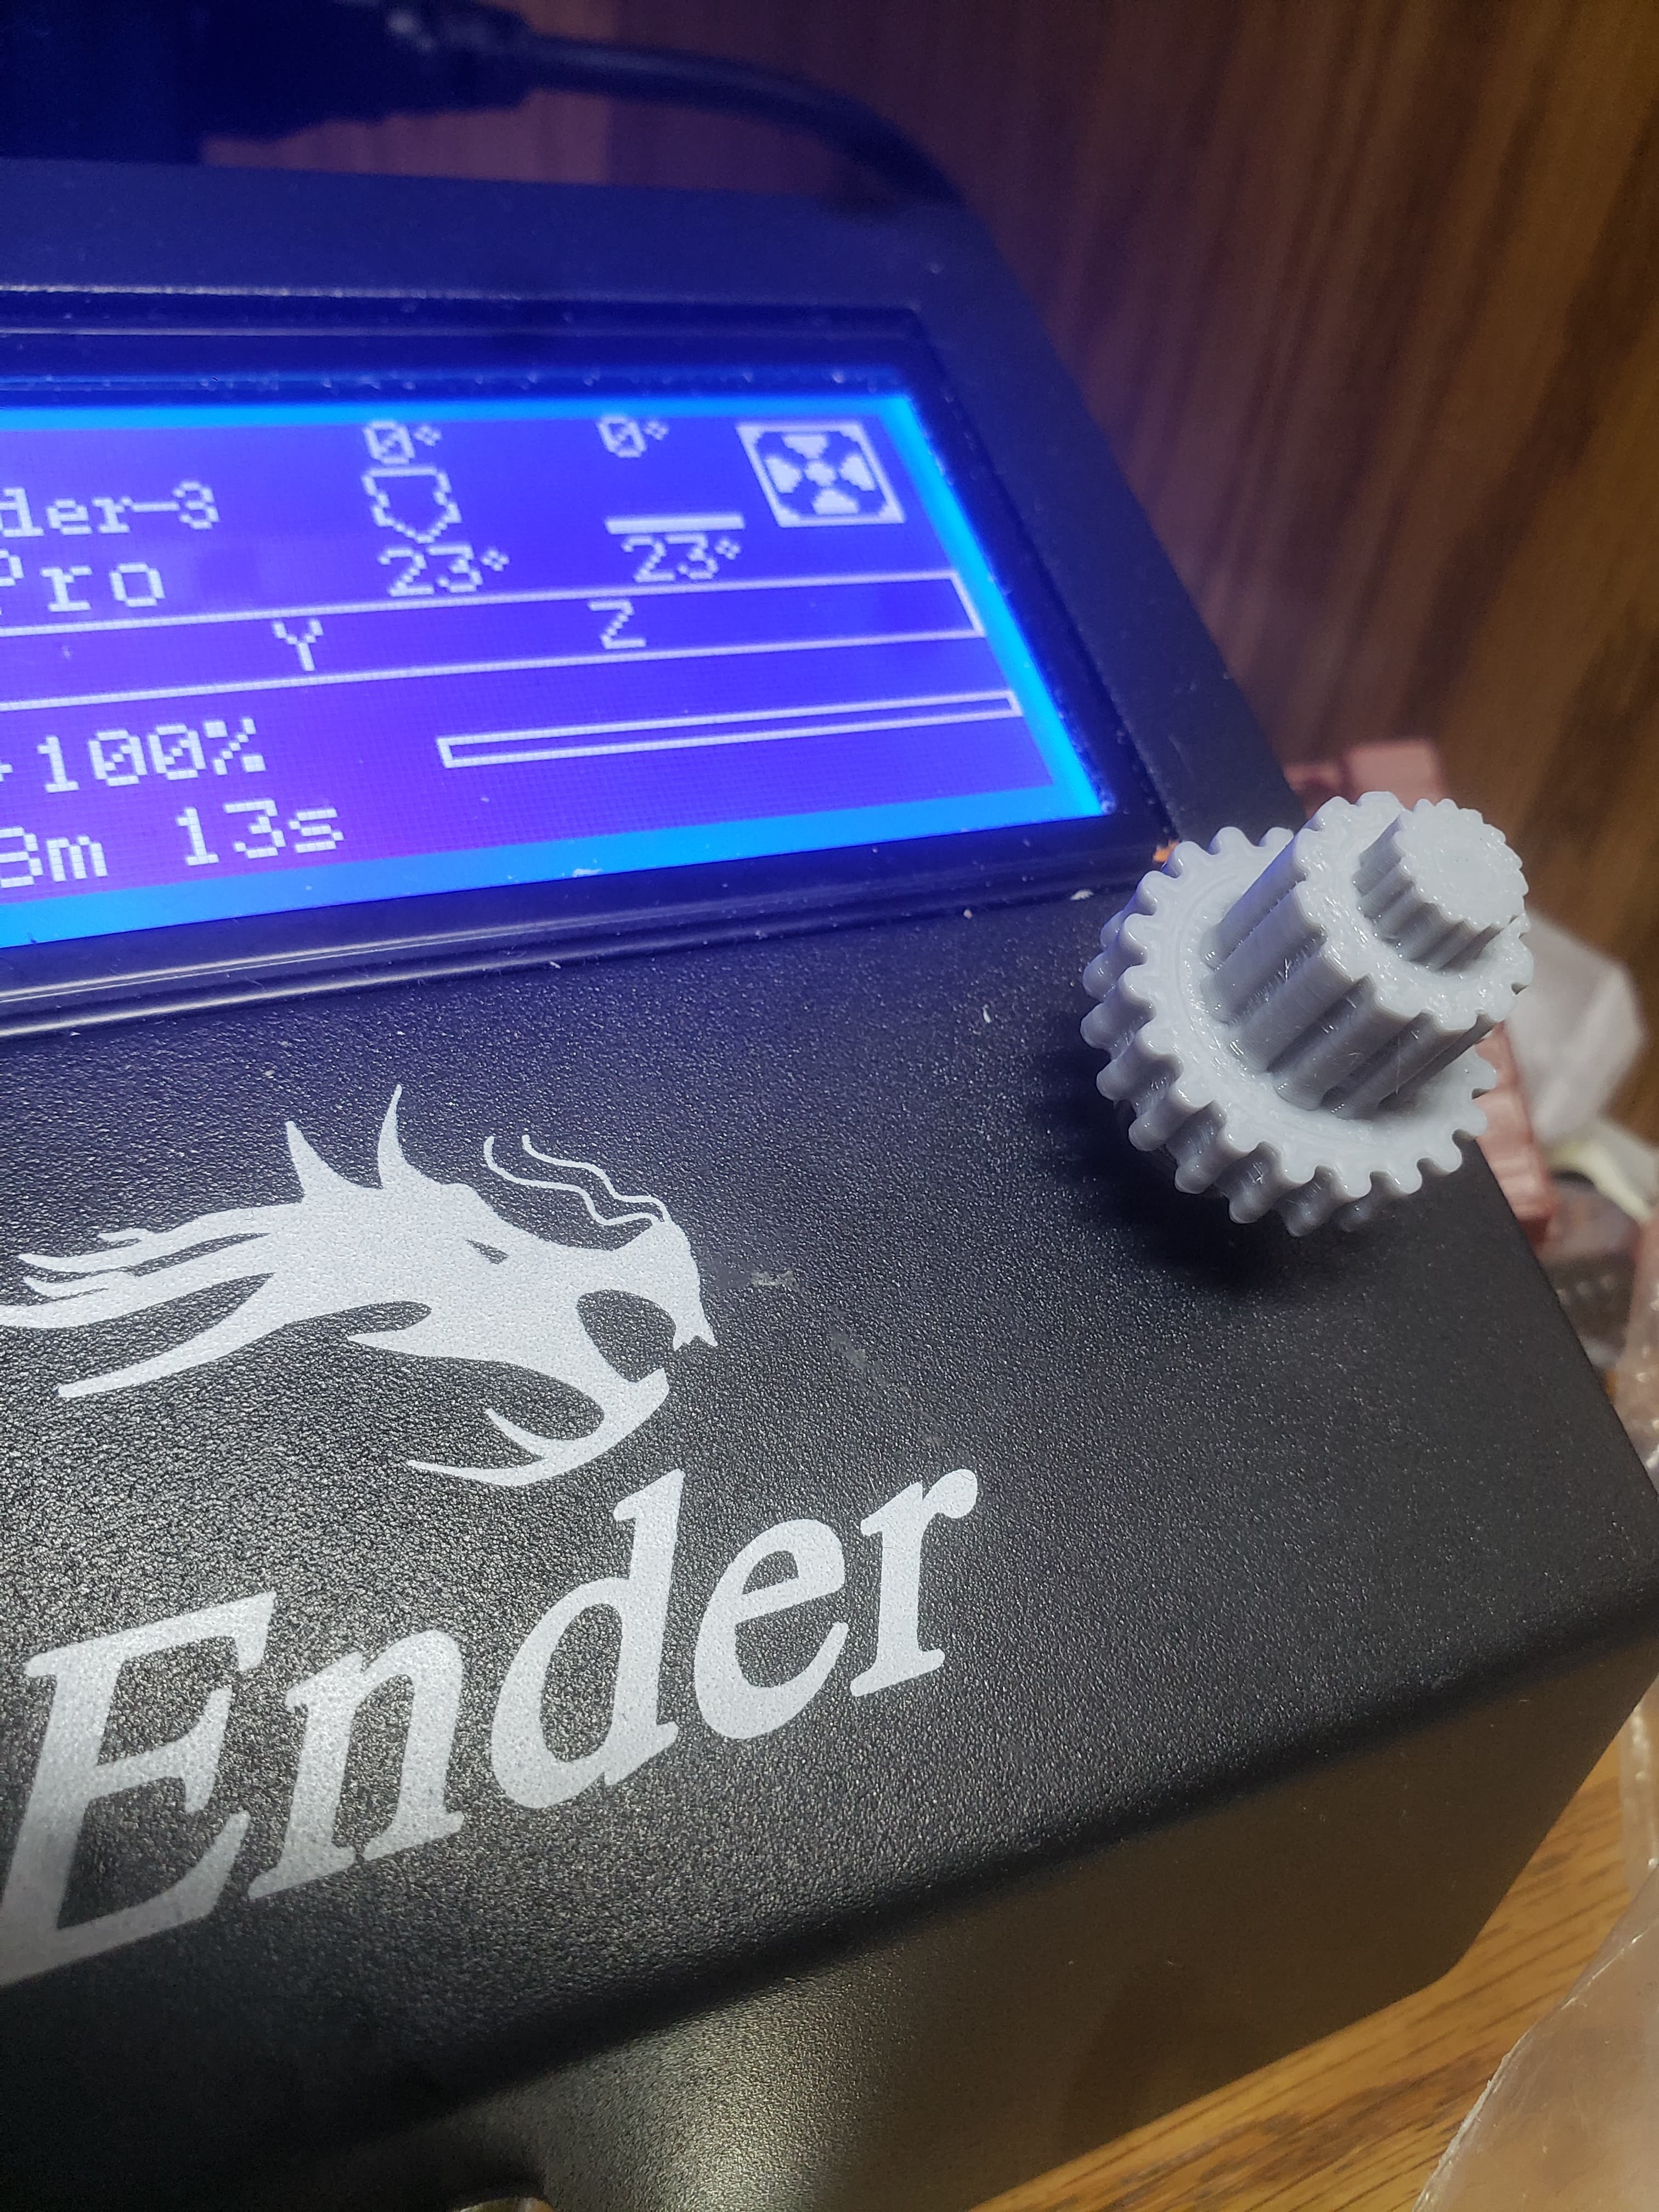 Ender 3 Multi-Speed Knob